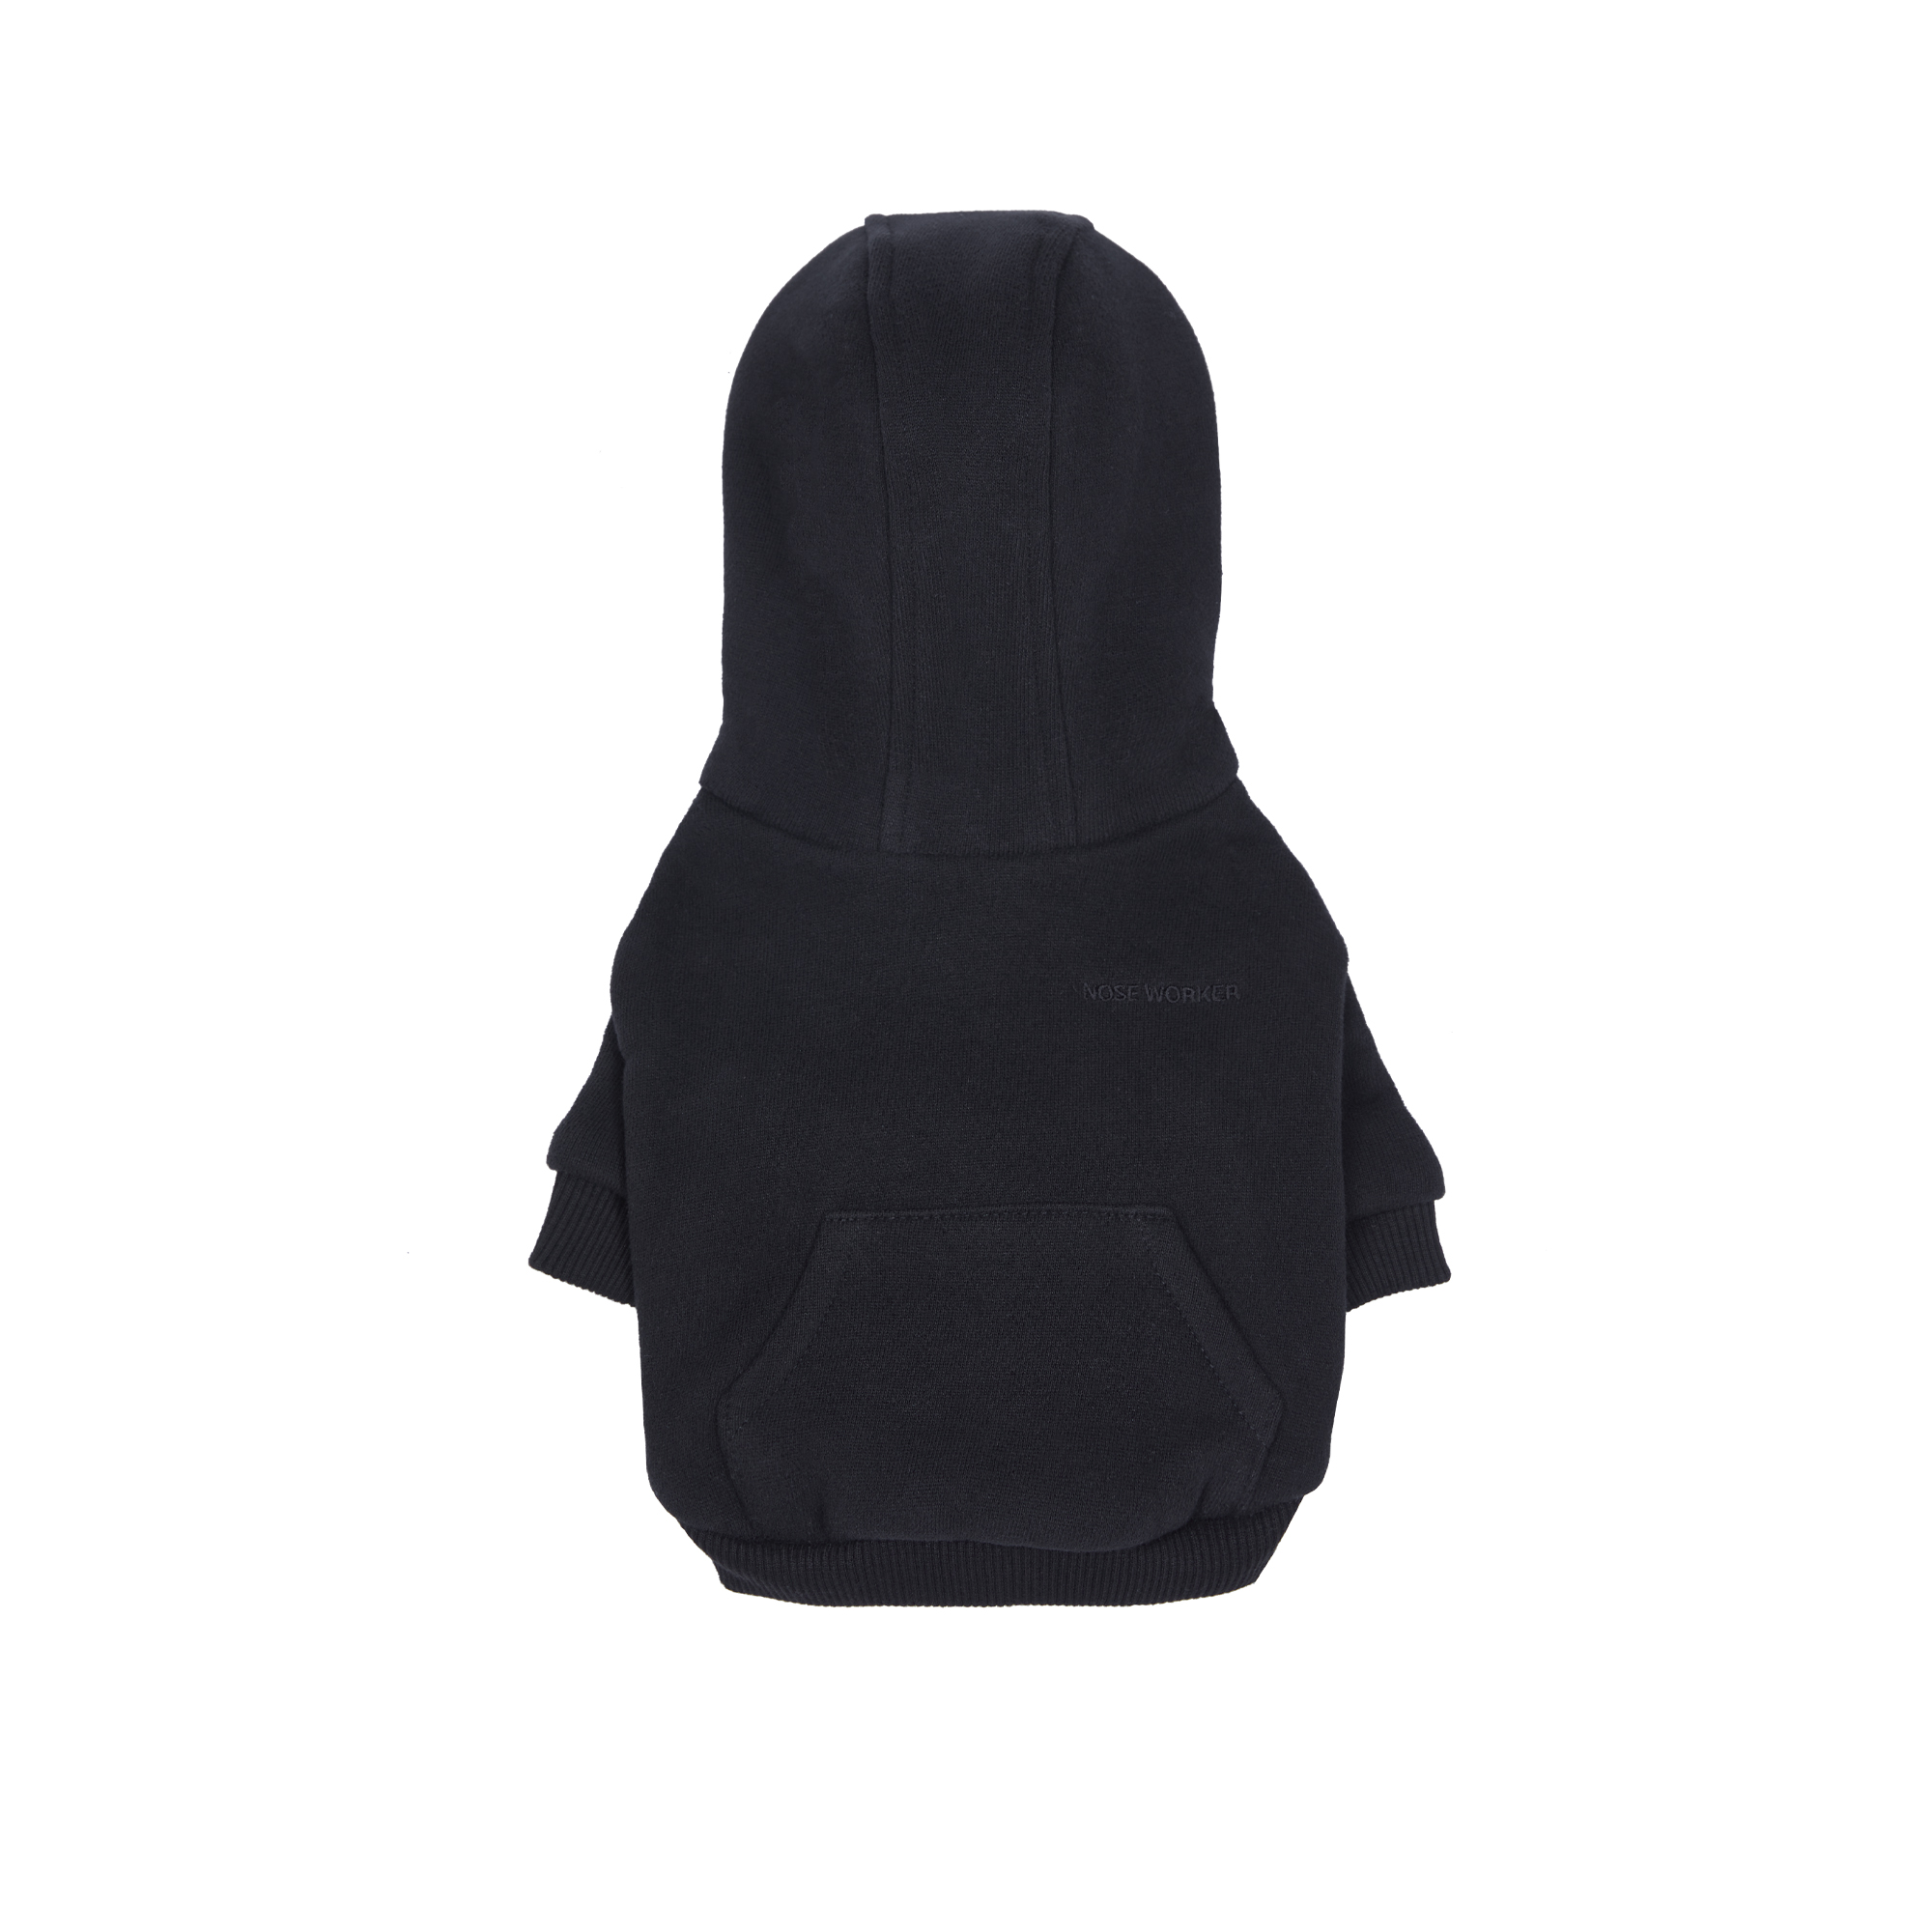 Sallysoom hoodie (Black)